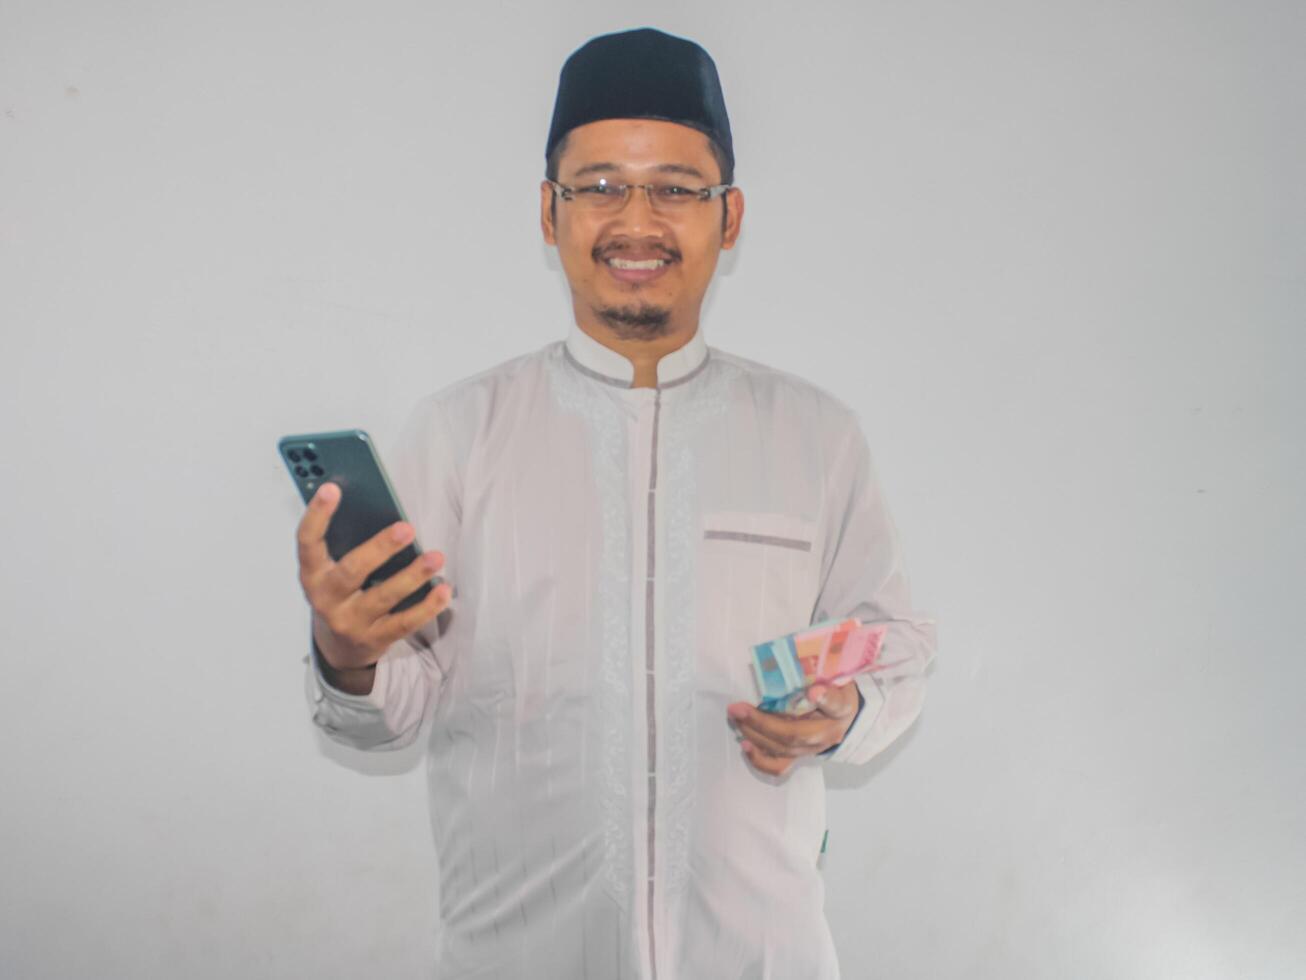 muçulmano ásia homem sorridente feliz enquanto segurando Móvel telefone e dinheiro foto